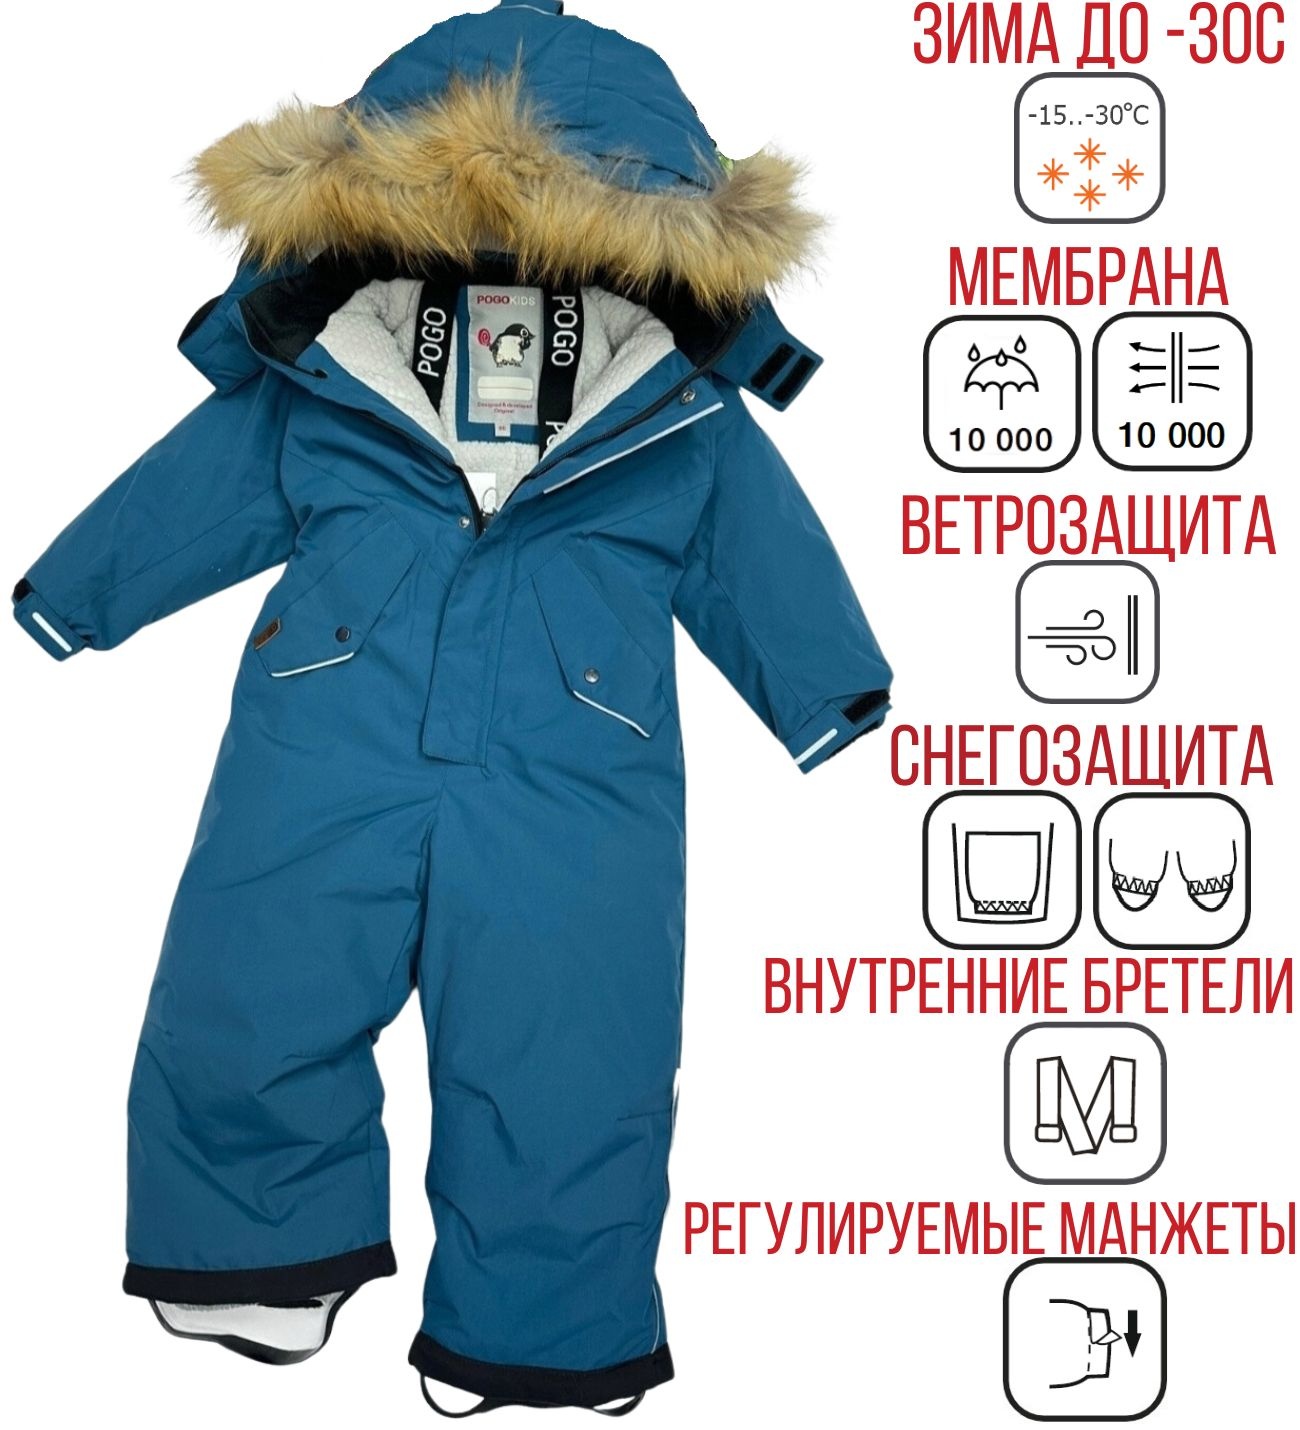 Комбинезон зимний PogoKids PG88249-13 (бирюзовый) - купить в  интернет-магазине BonKids.ru